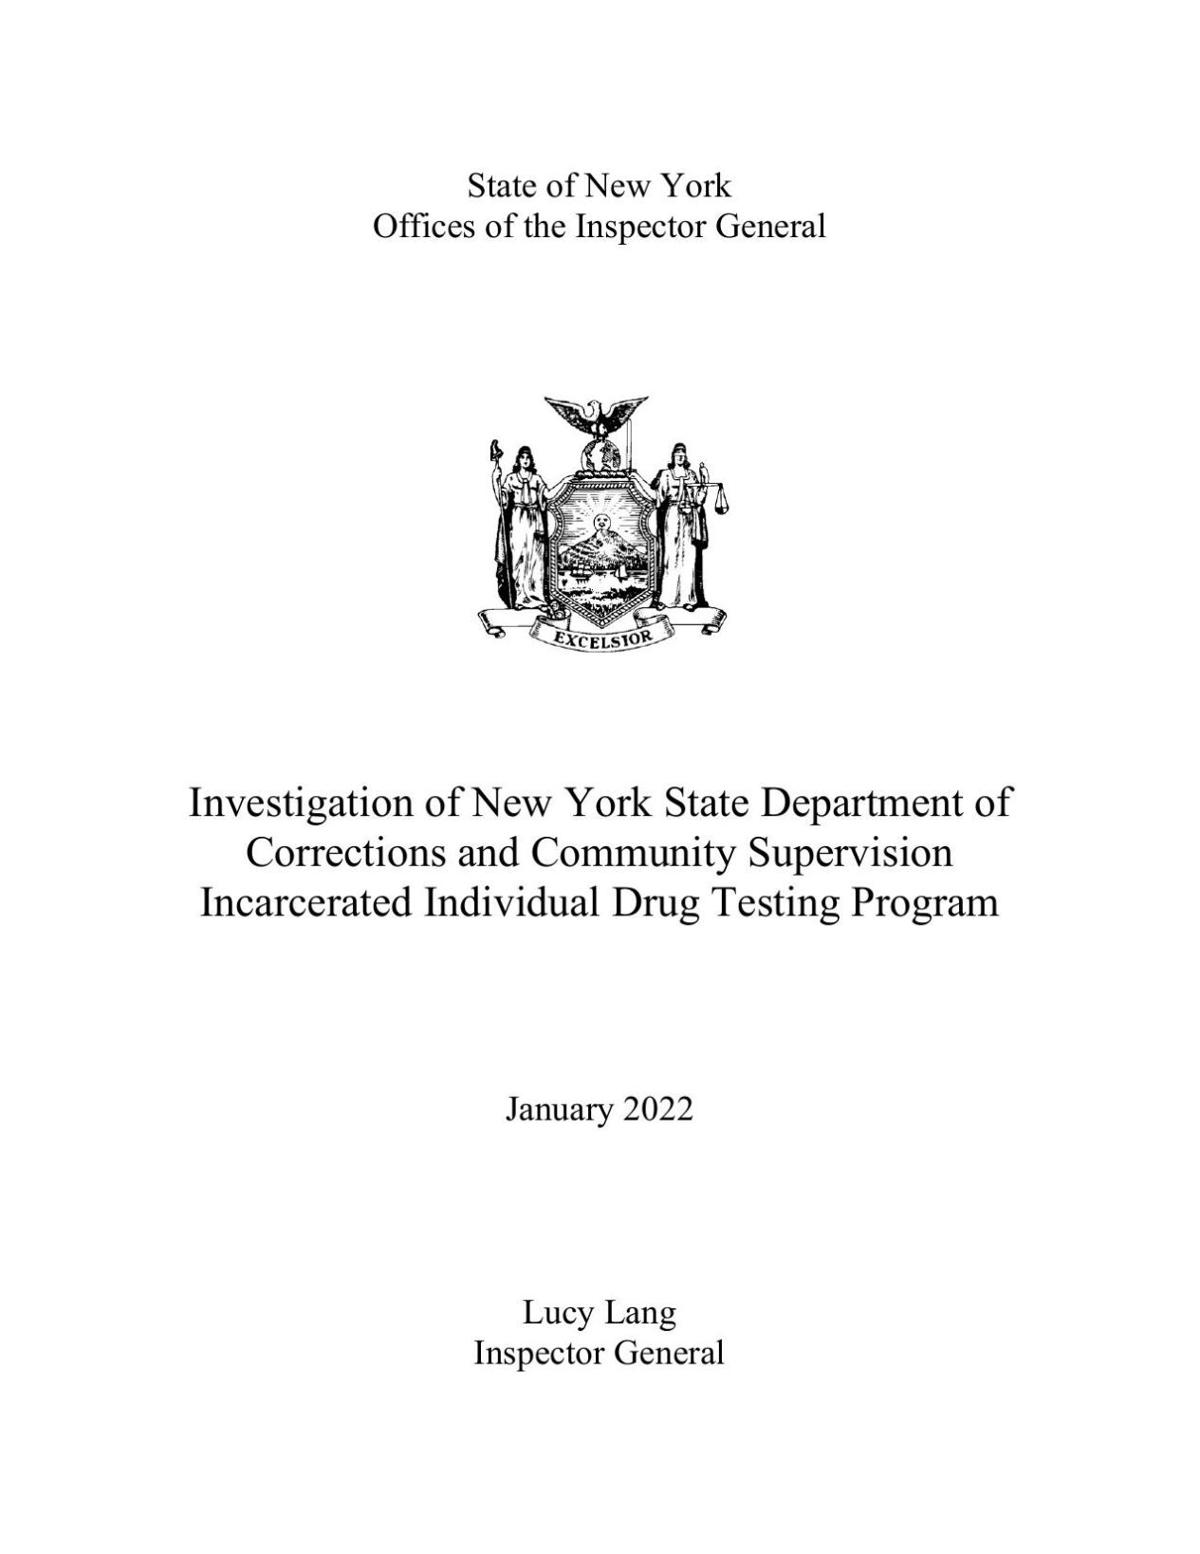 IG report on DOCCS drug testing